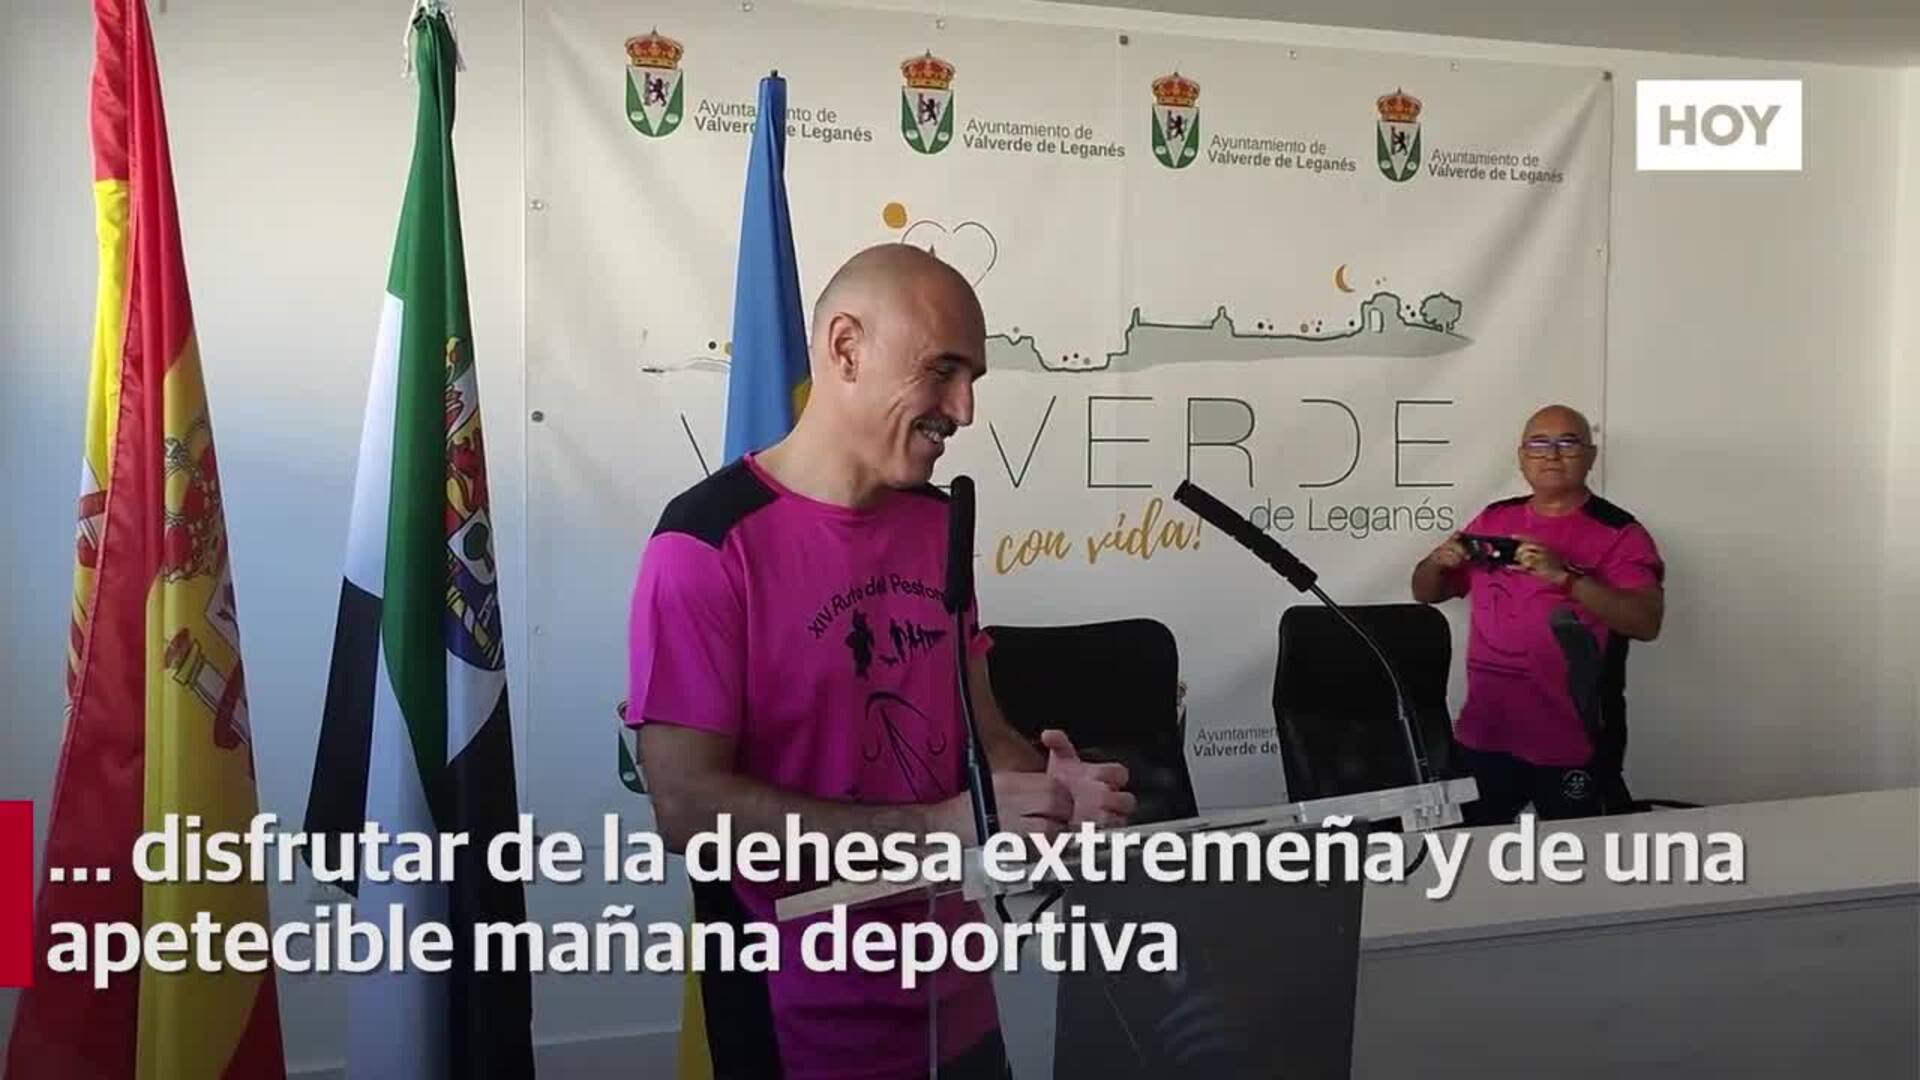 La Ruta del Pestorejo vuelve a unir a Valverde de Leganés y Badajoz